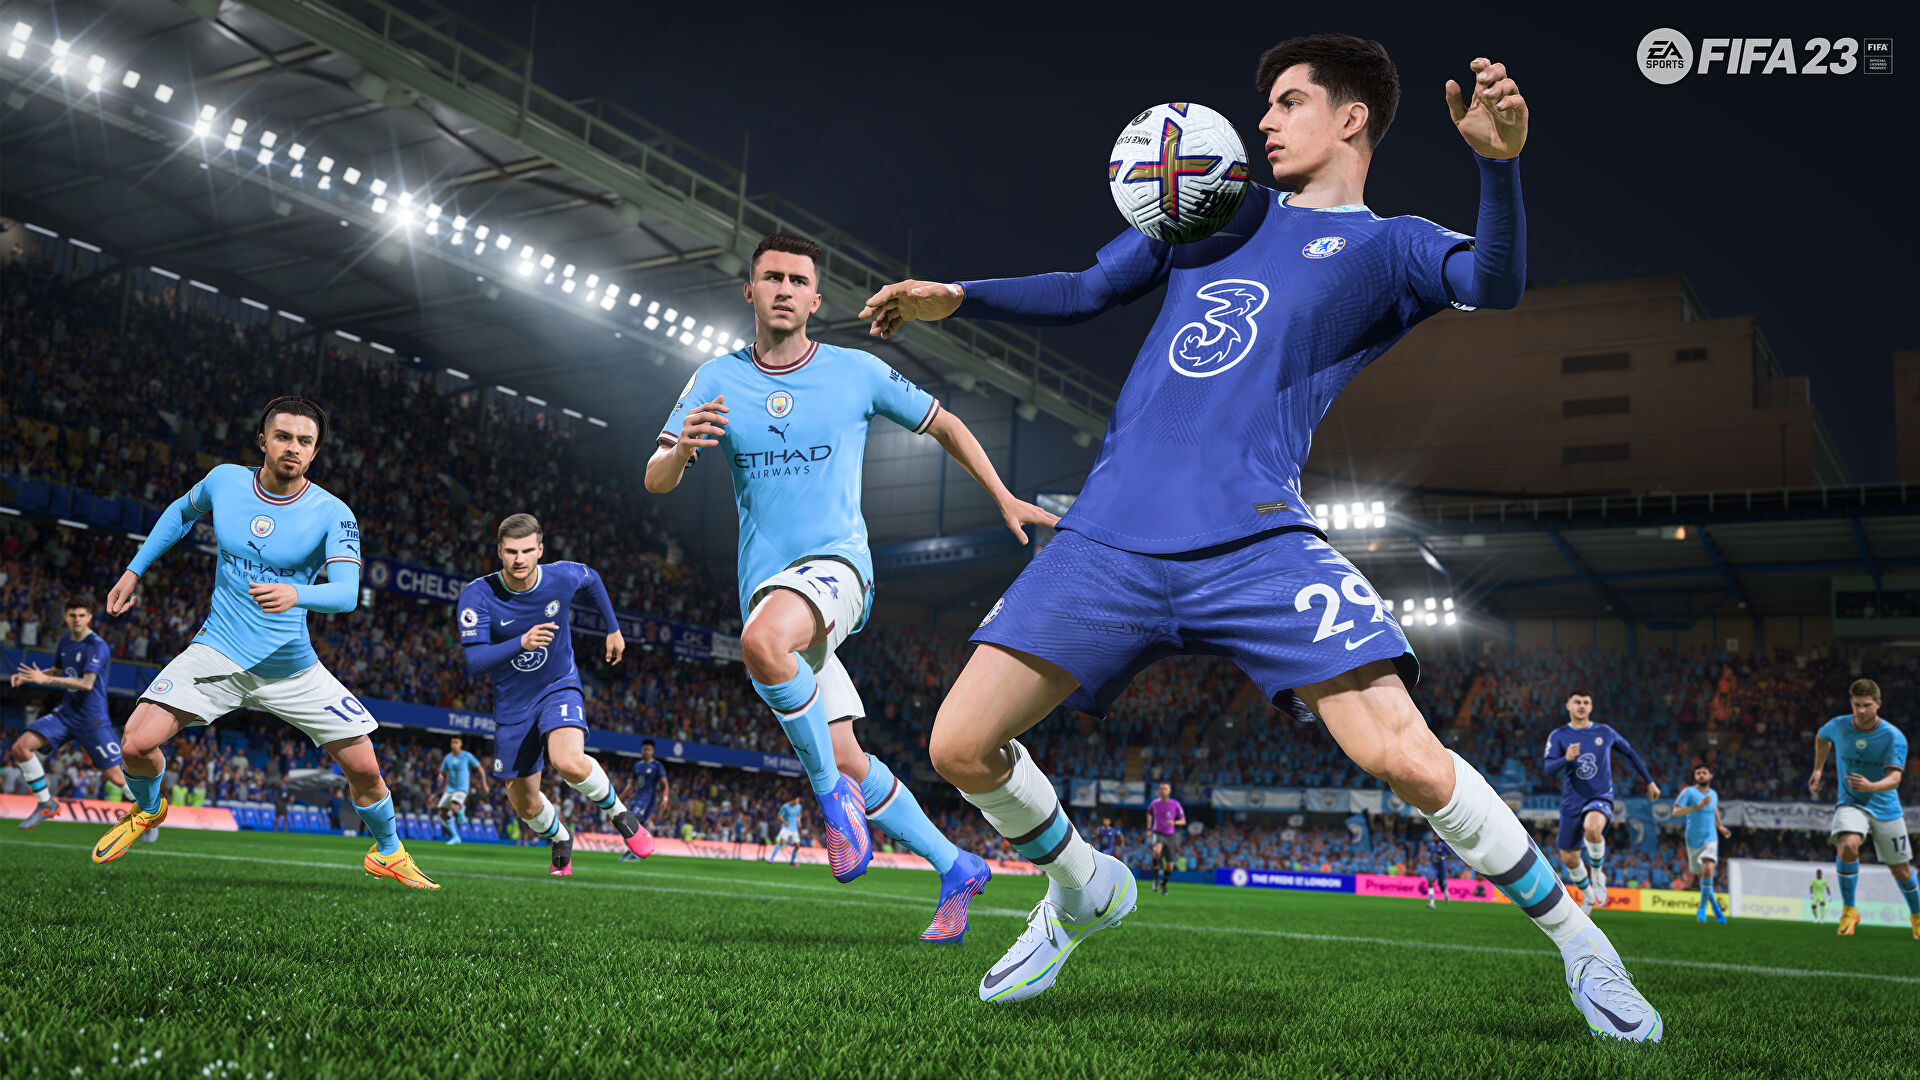 FIFA 23 получила второй патч. Апдейт улучшает поведение мяча, пасы и пенальти